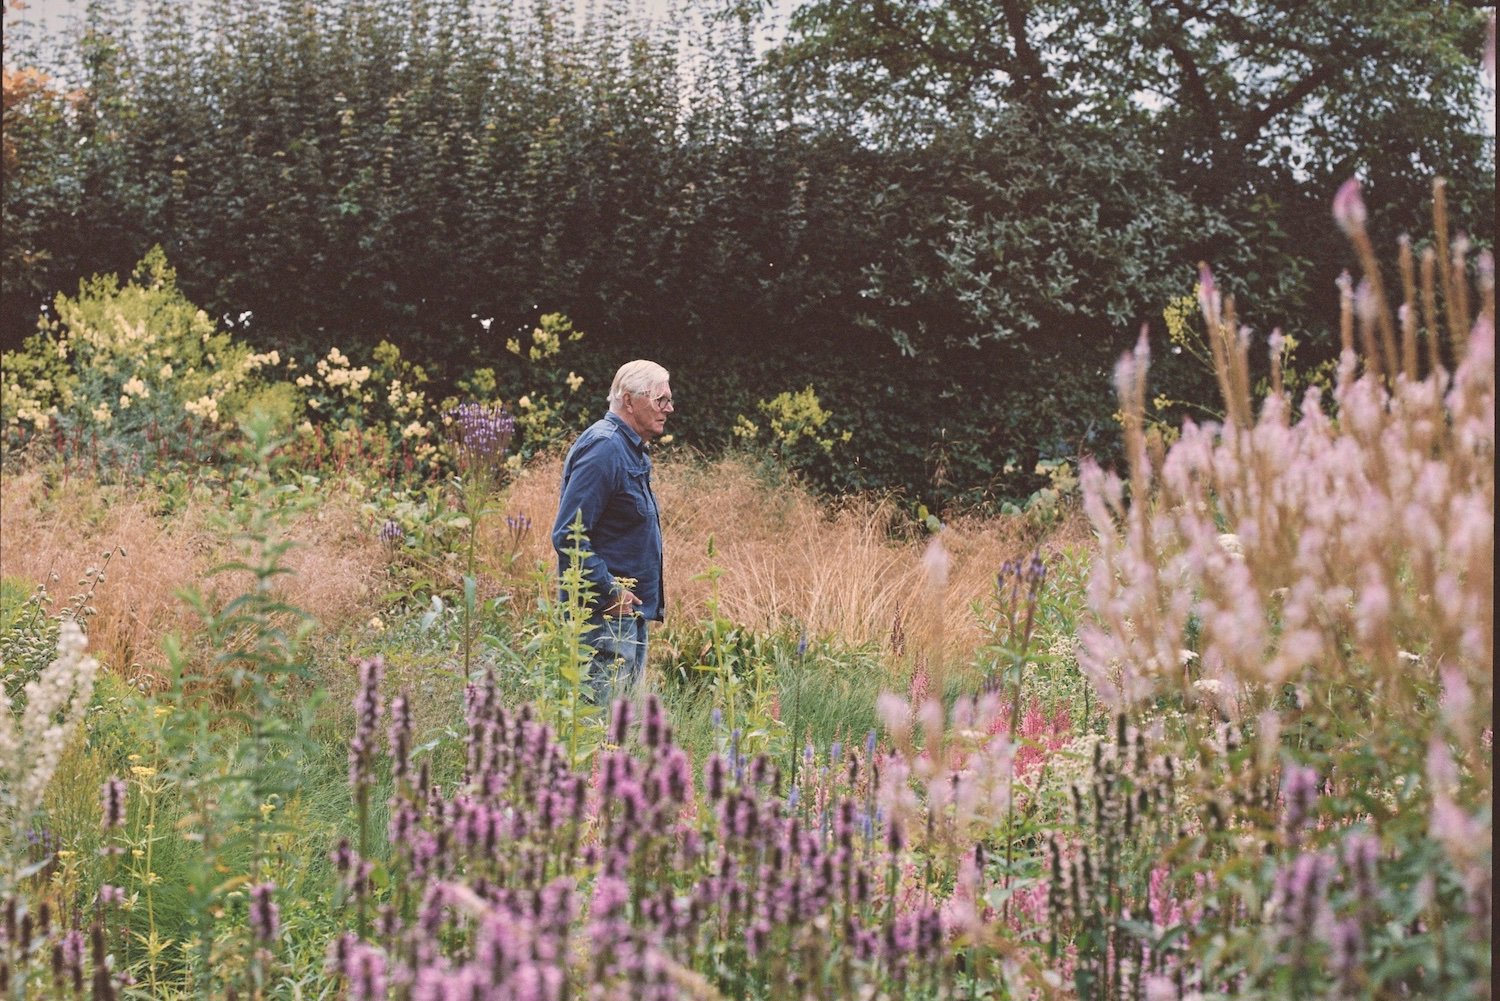 El jardín del paisajista Piet Oudolf en Hummelo, Holanda, es uno de los proyectos recogidos en el libro "The Avant Gardens", de Gestalten (2023).